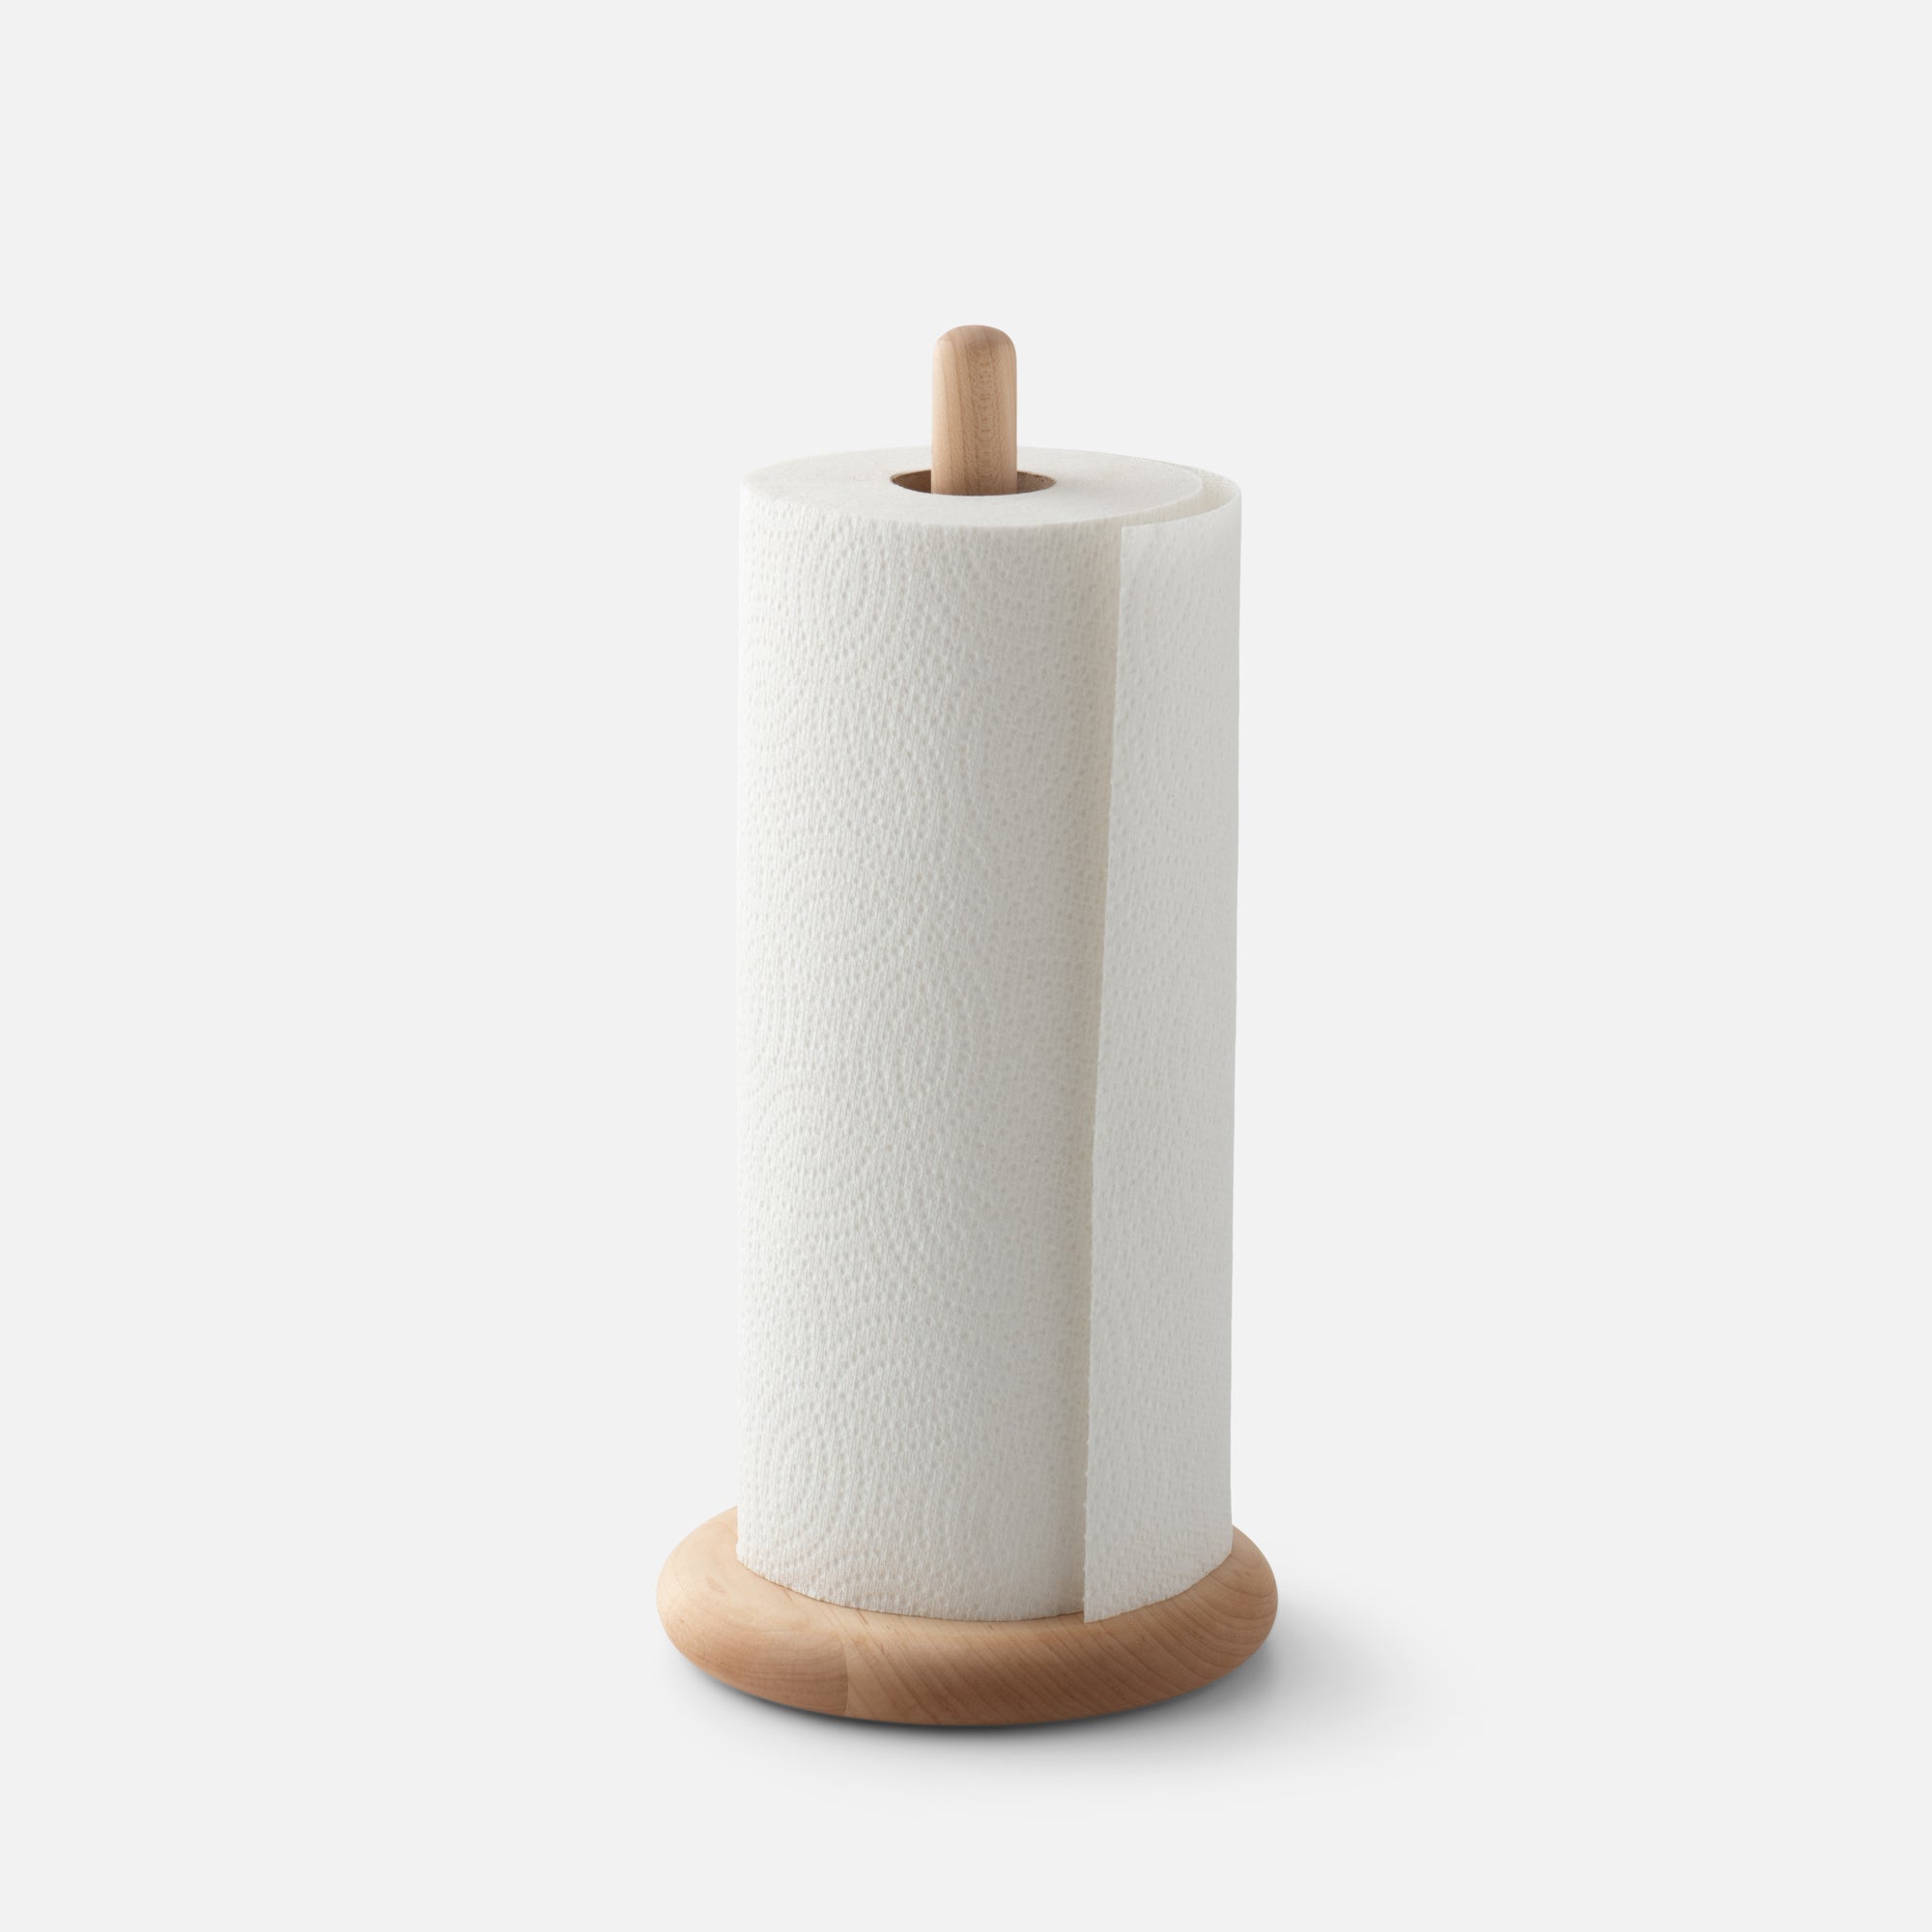 Simple Wood Paper Towel Holder